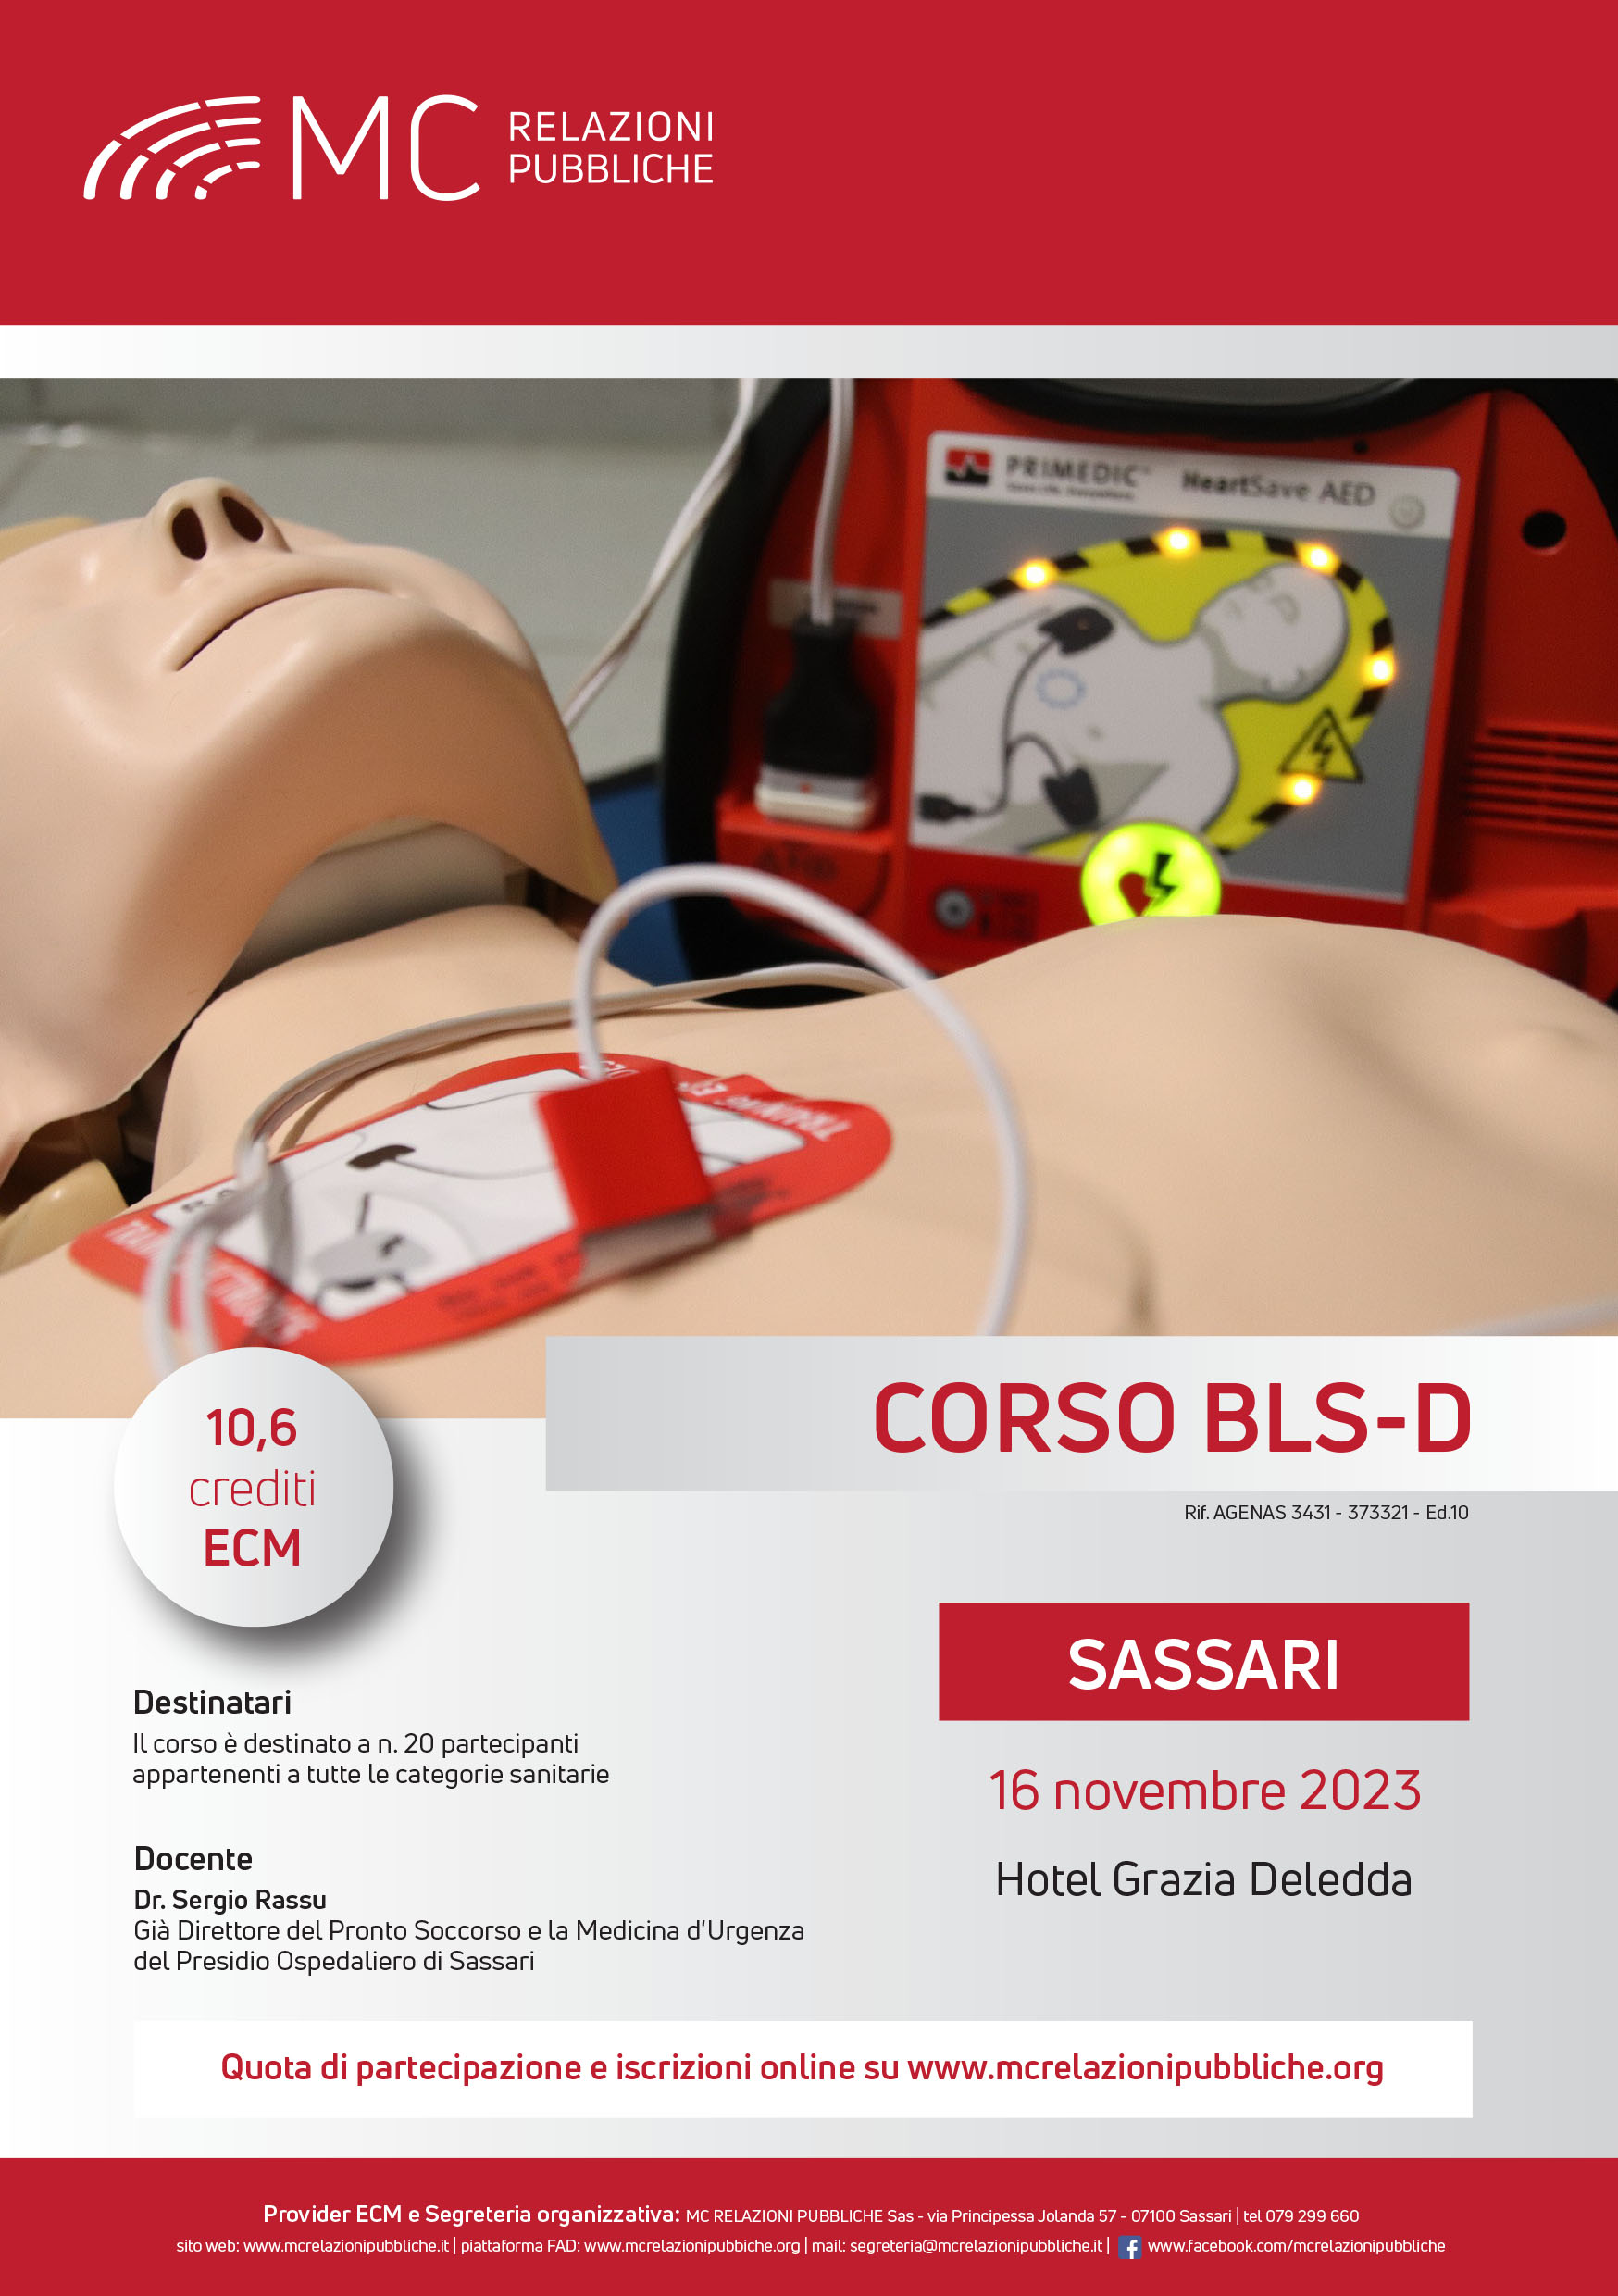 Corso BLS-D. Basic Life Support-Defibrillation - 16 novembre 2023